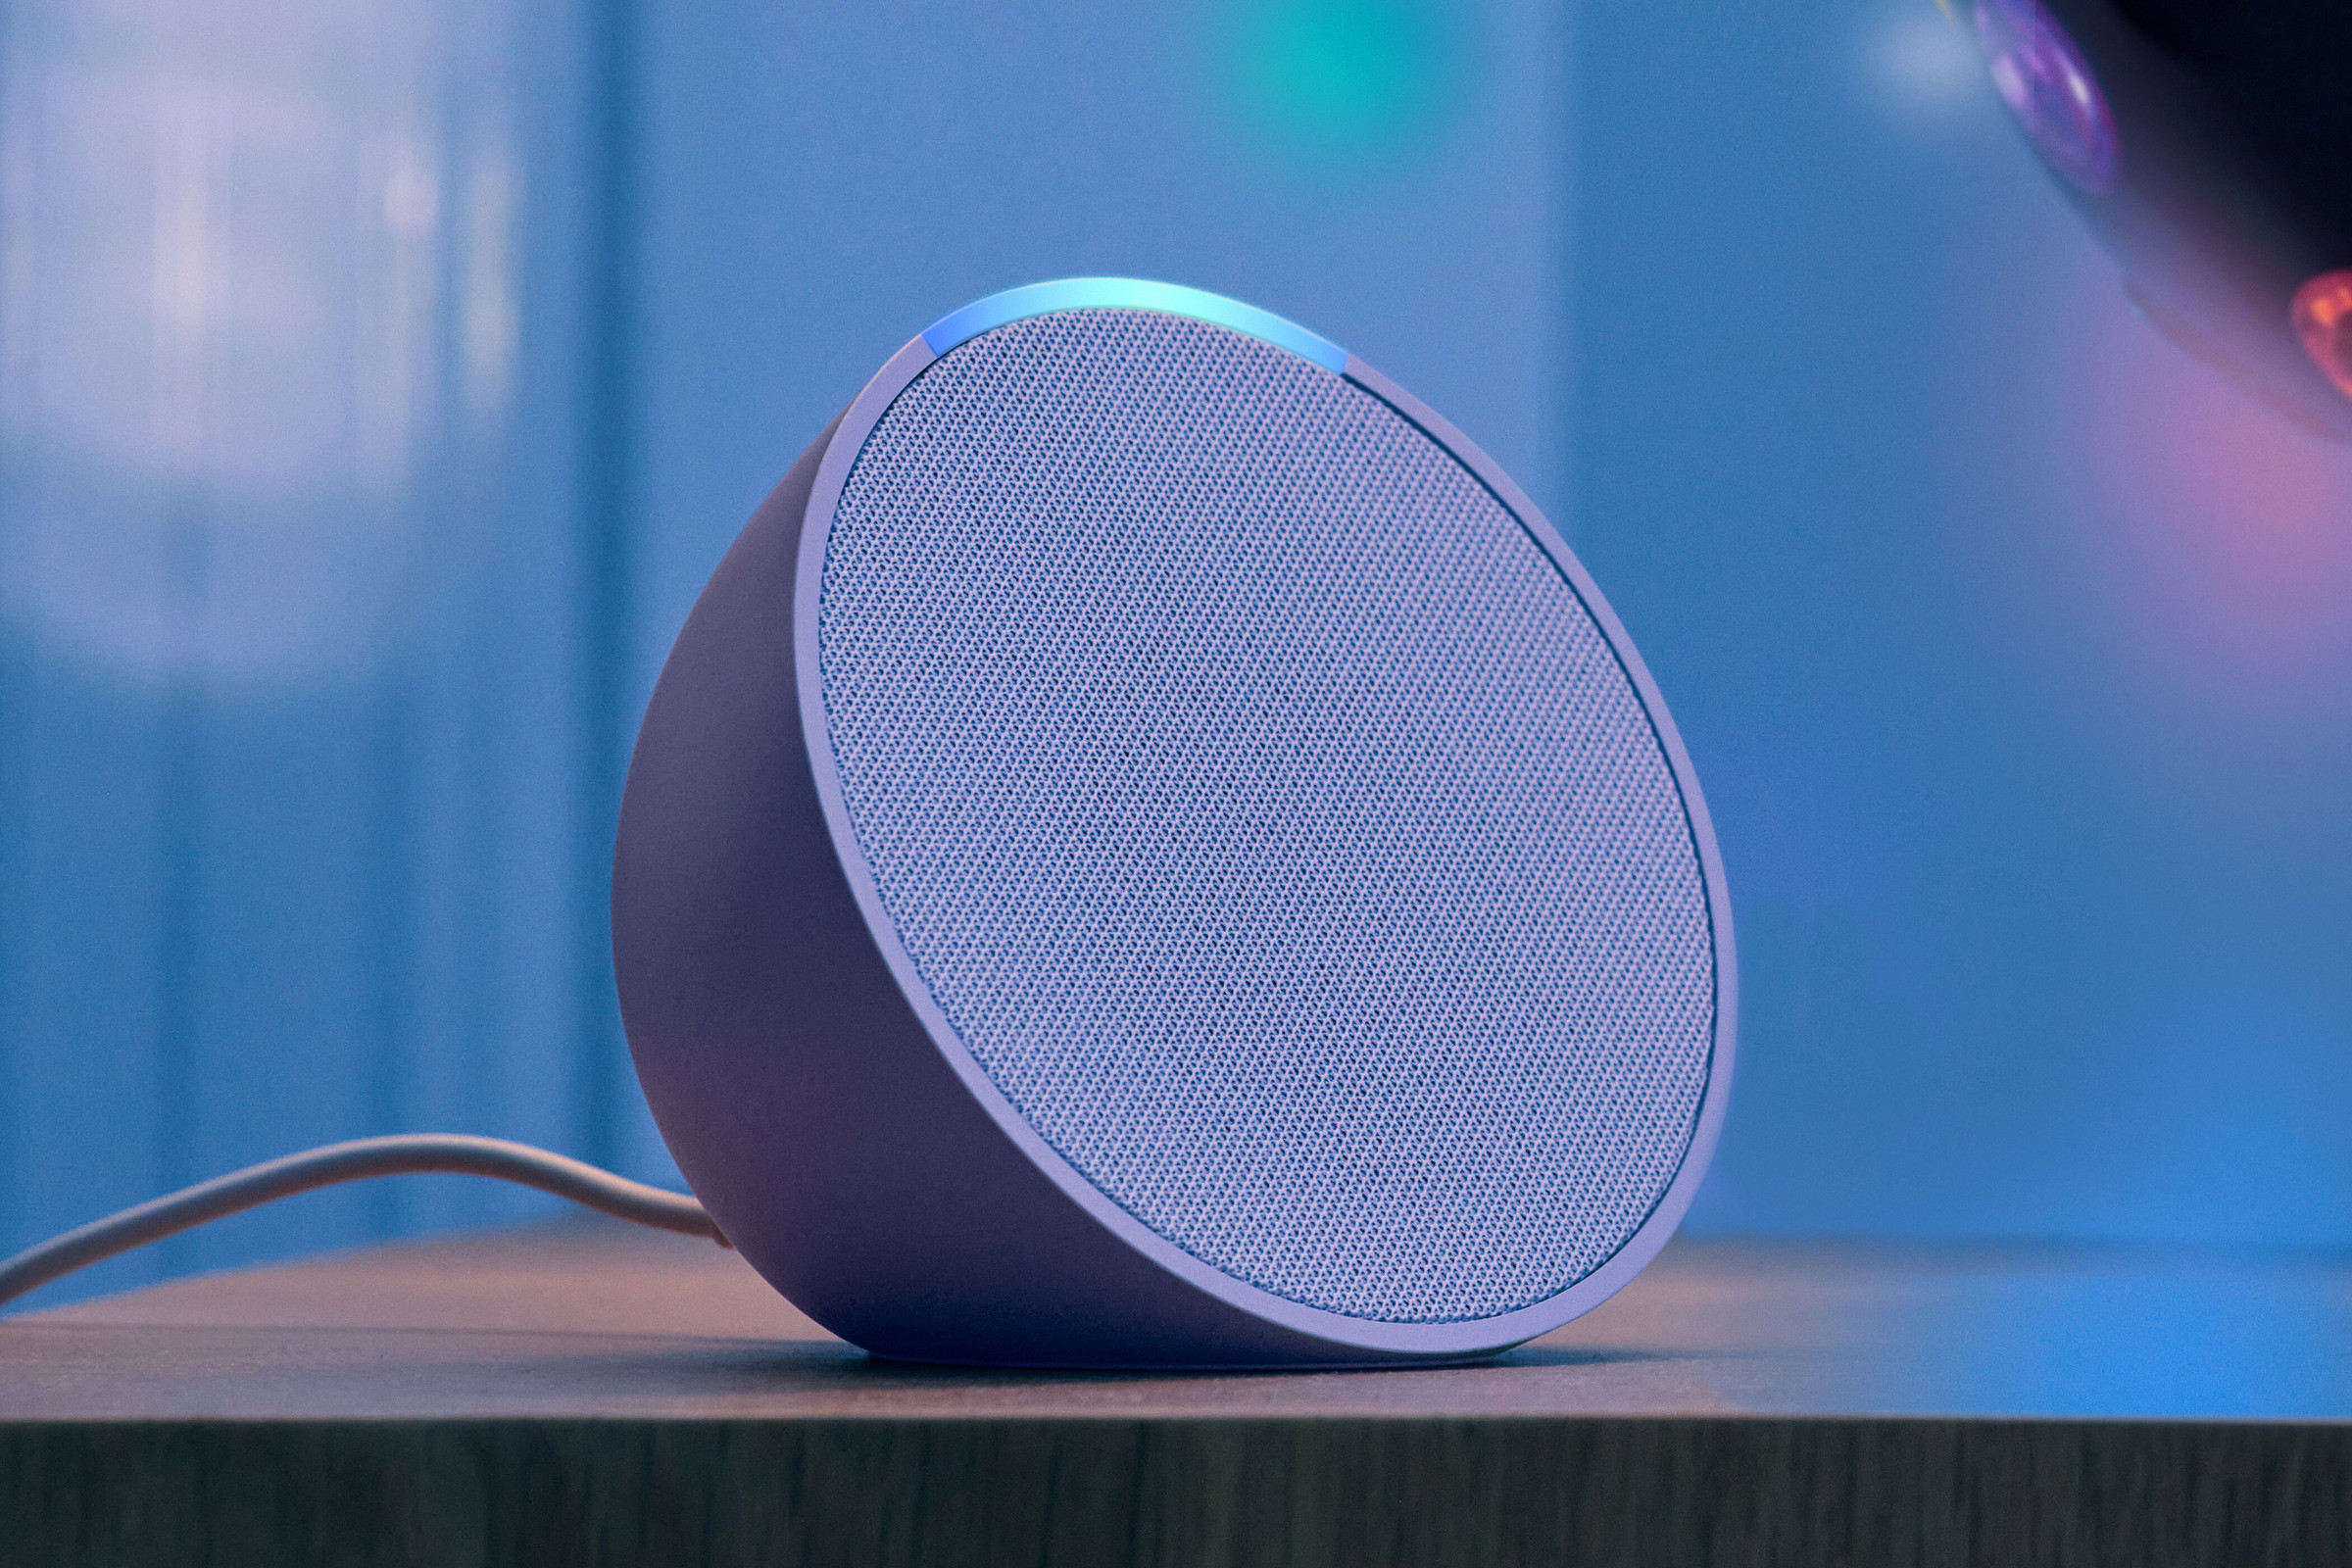 A purple speaker on a desk.